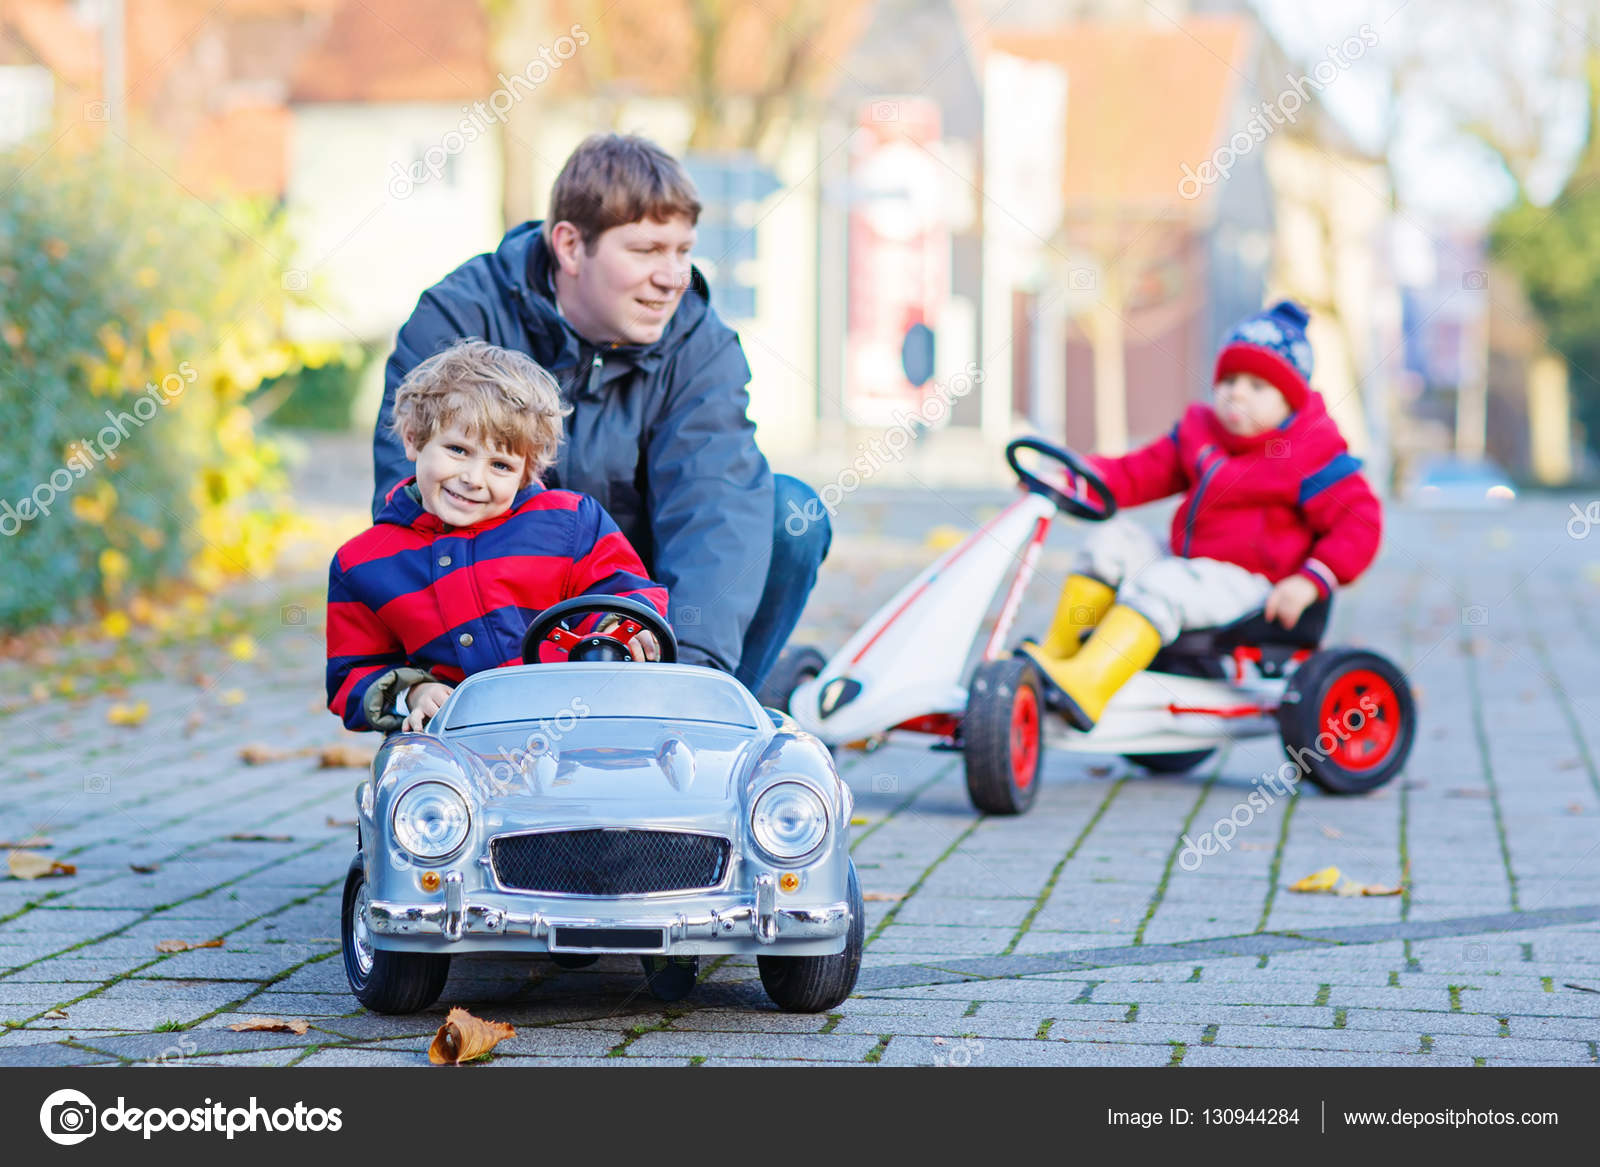 Banco de imagens : grama, ao ar livre, carro, Garoto, criança